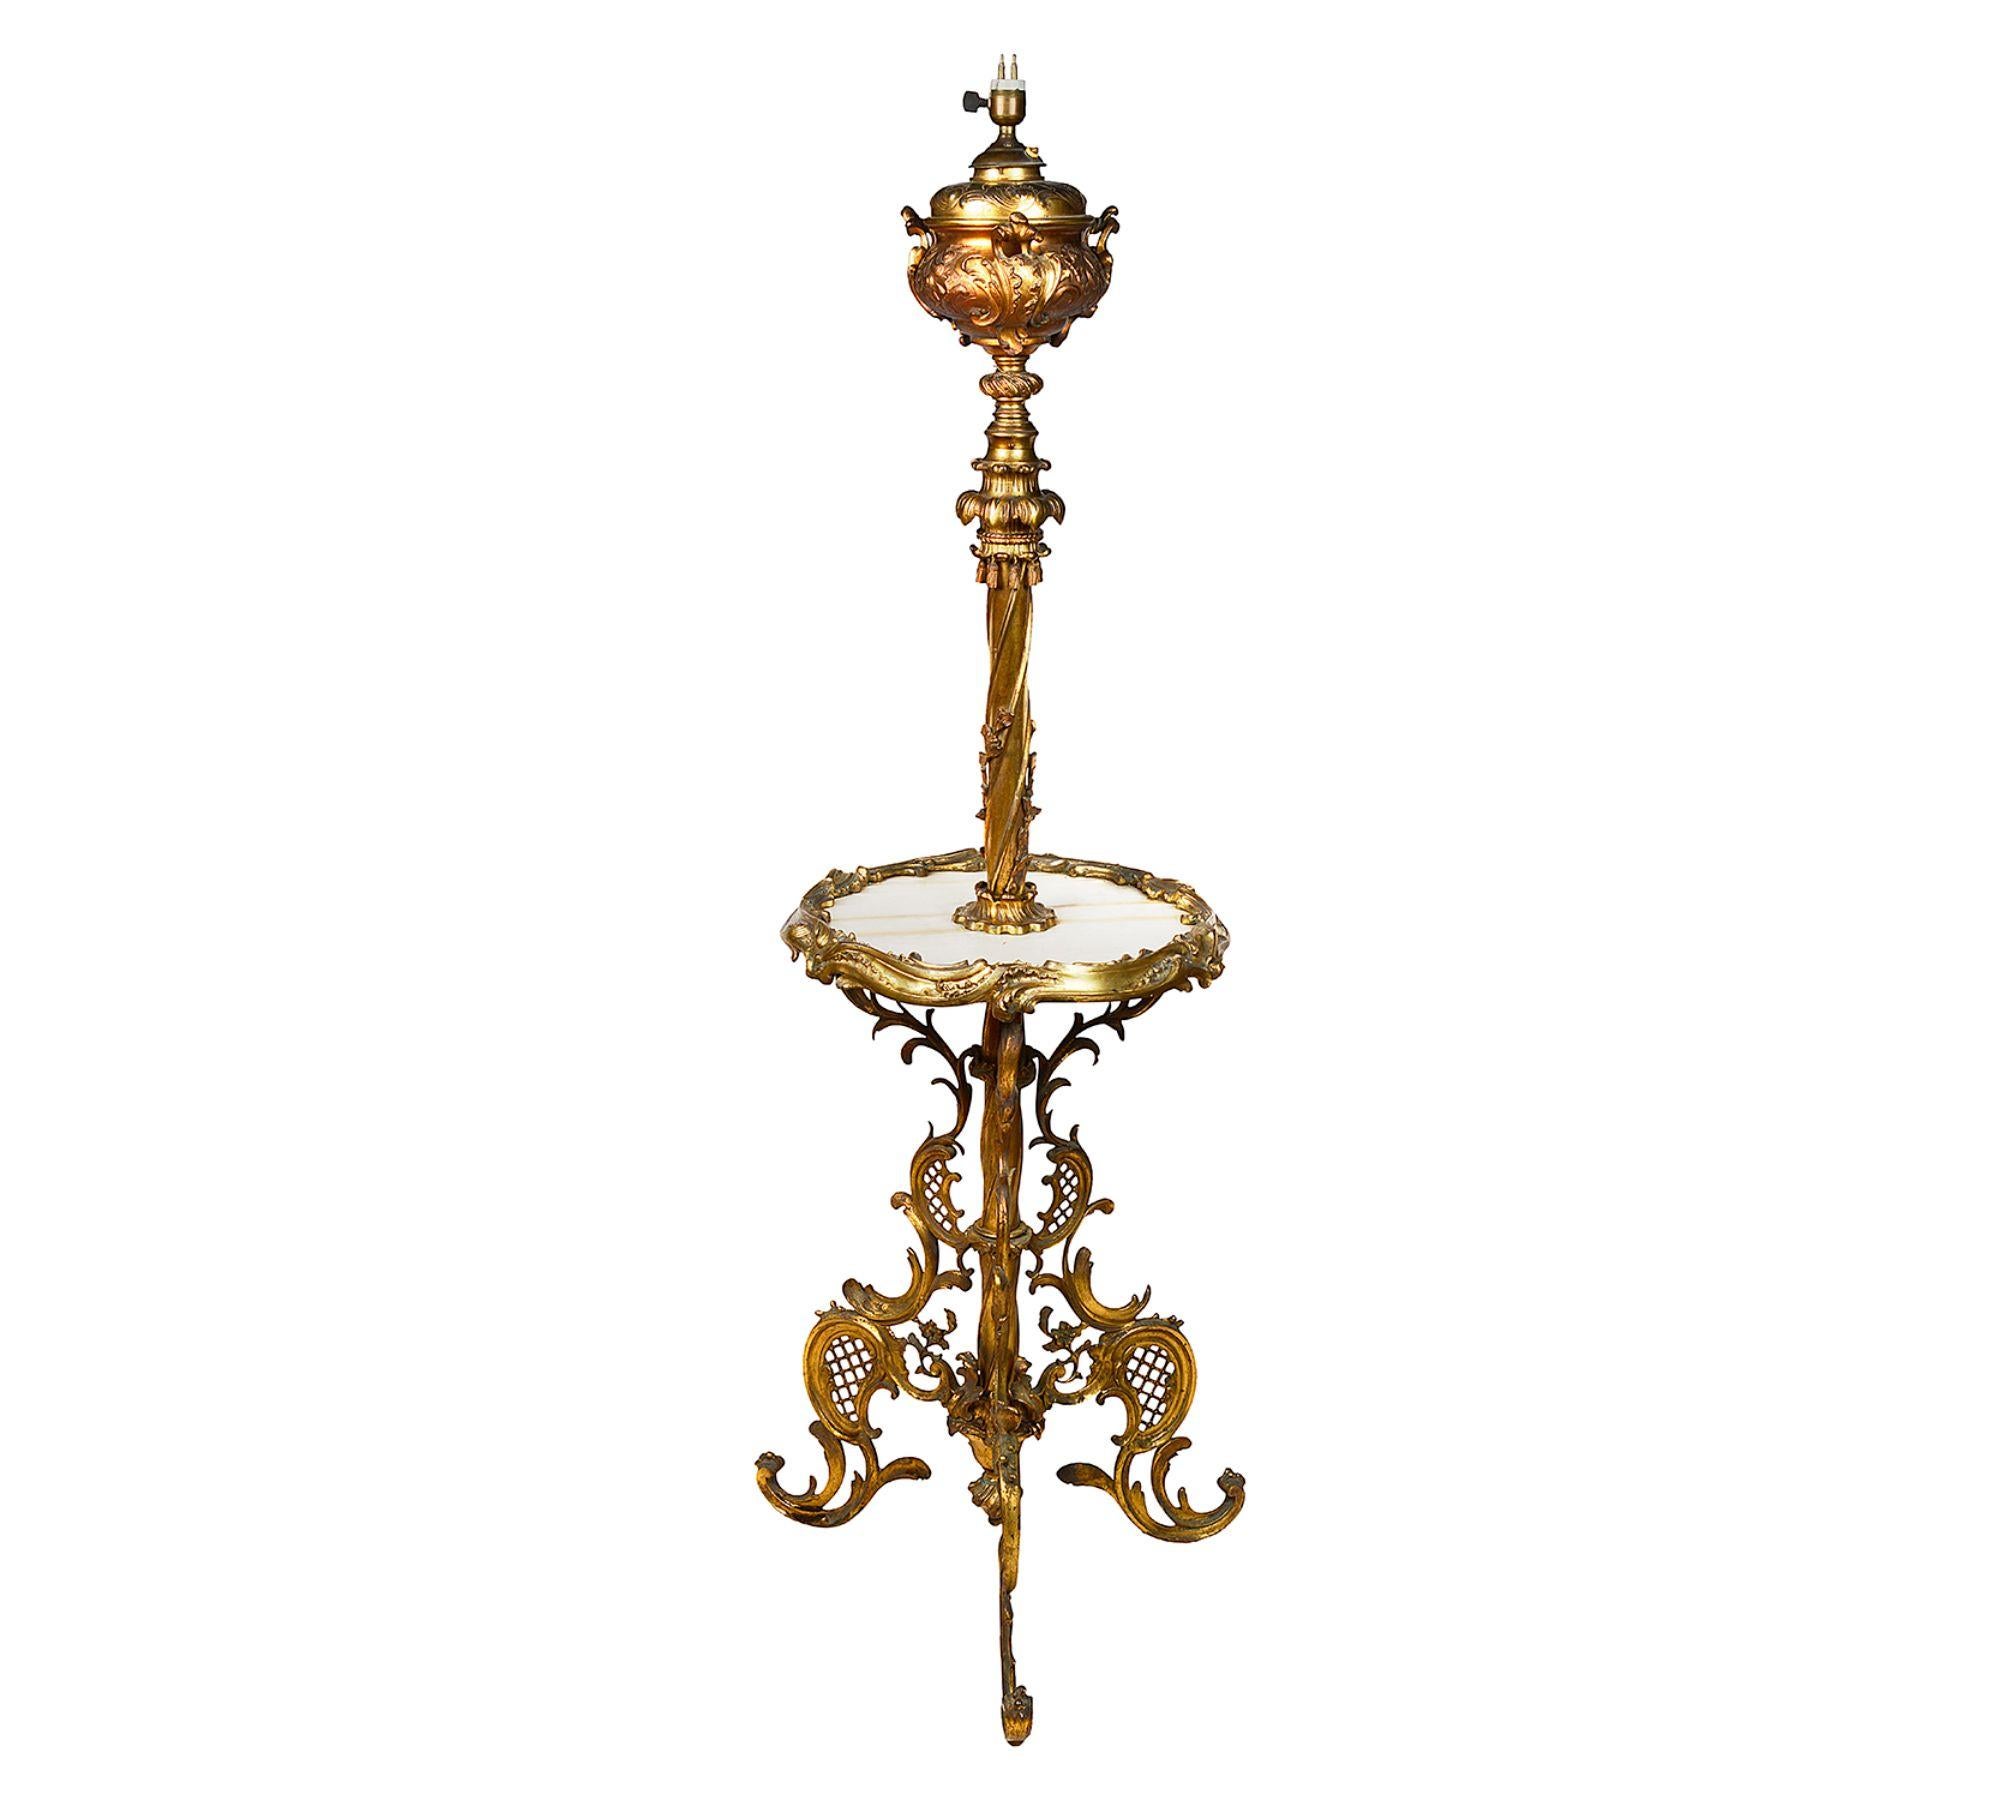 Lampe à huile standard en bronze doré de bonne qualité datant de la fin du 19e siècle. Le plateau en marbre est soutenu par une base tripode en bronze doré d'influence rococo.
 
 
Lot 74 G9947/23. SNYZ